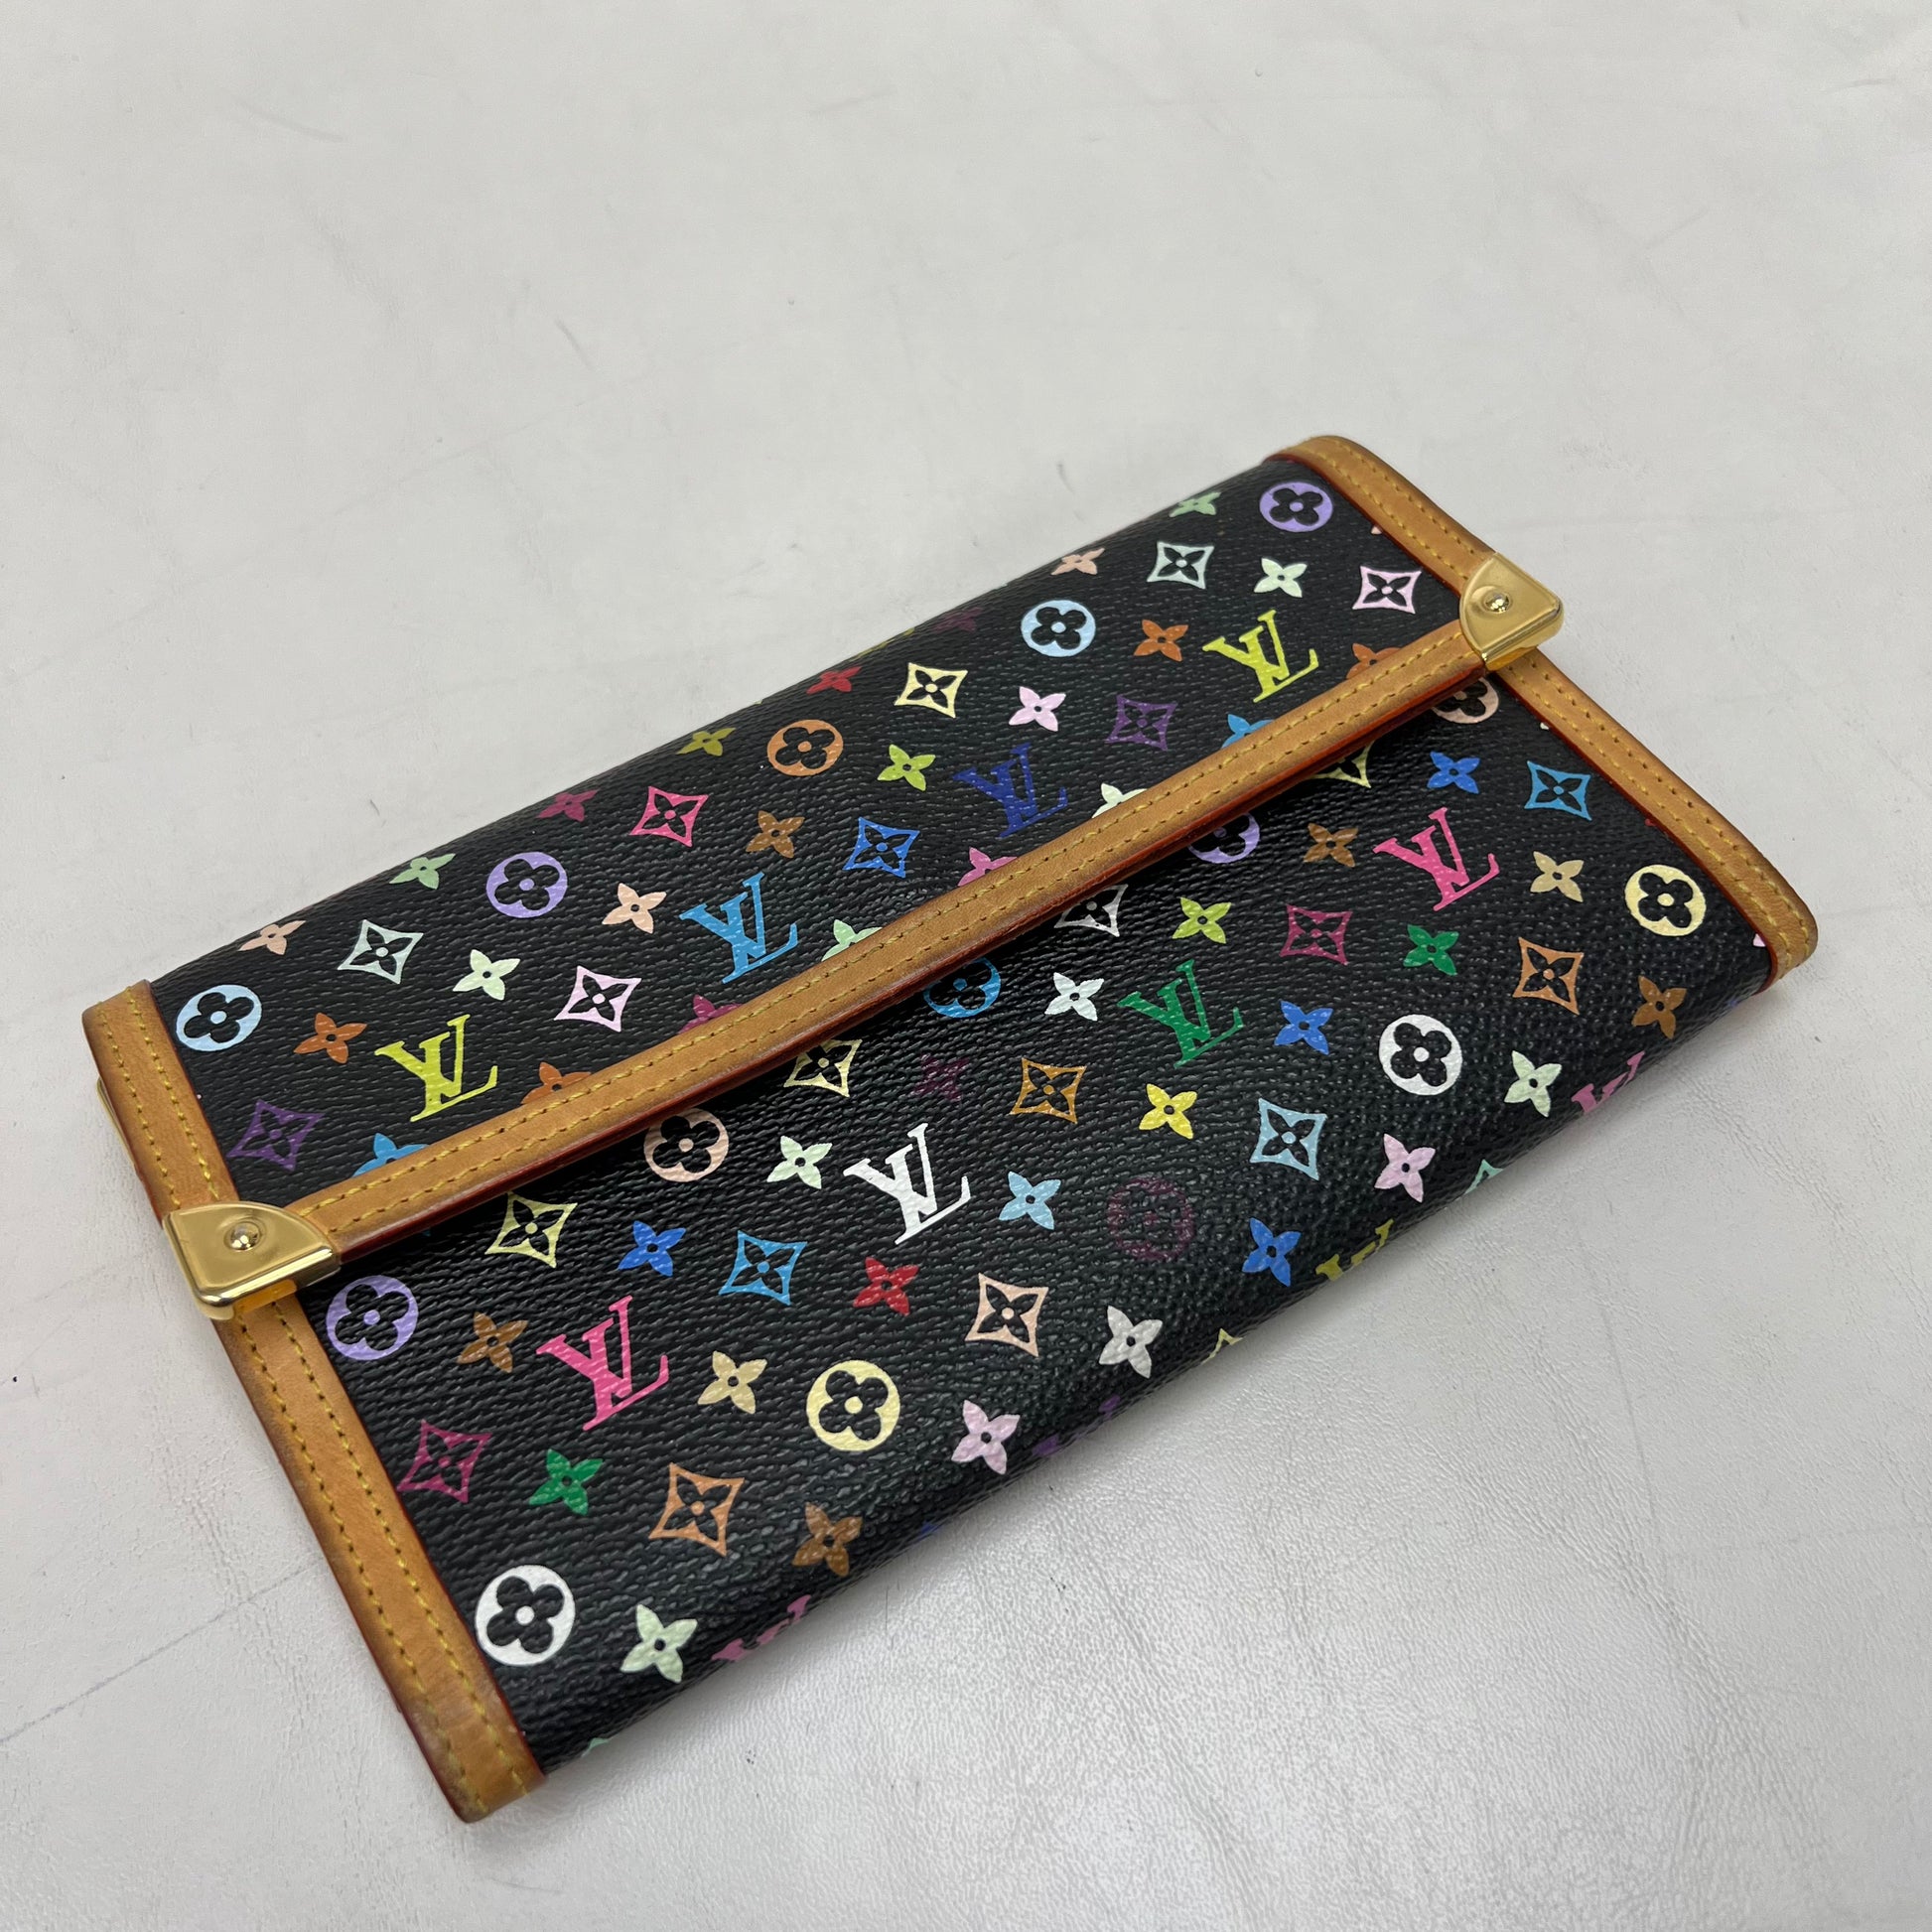 lv multicolor wallet